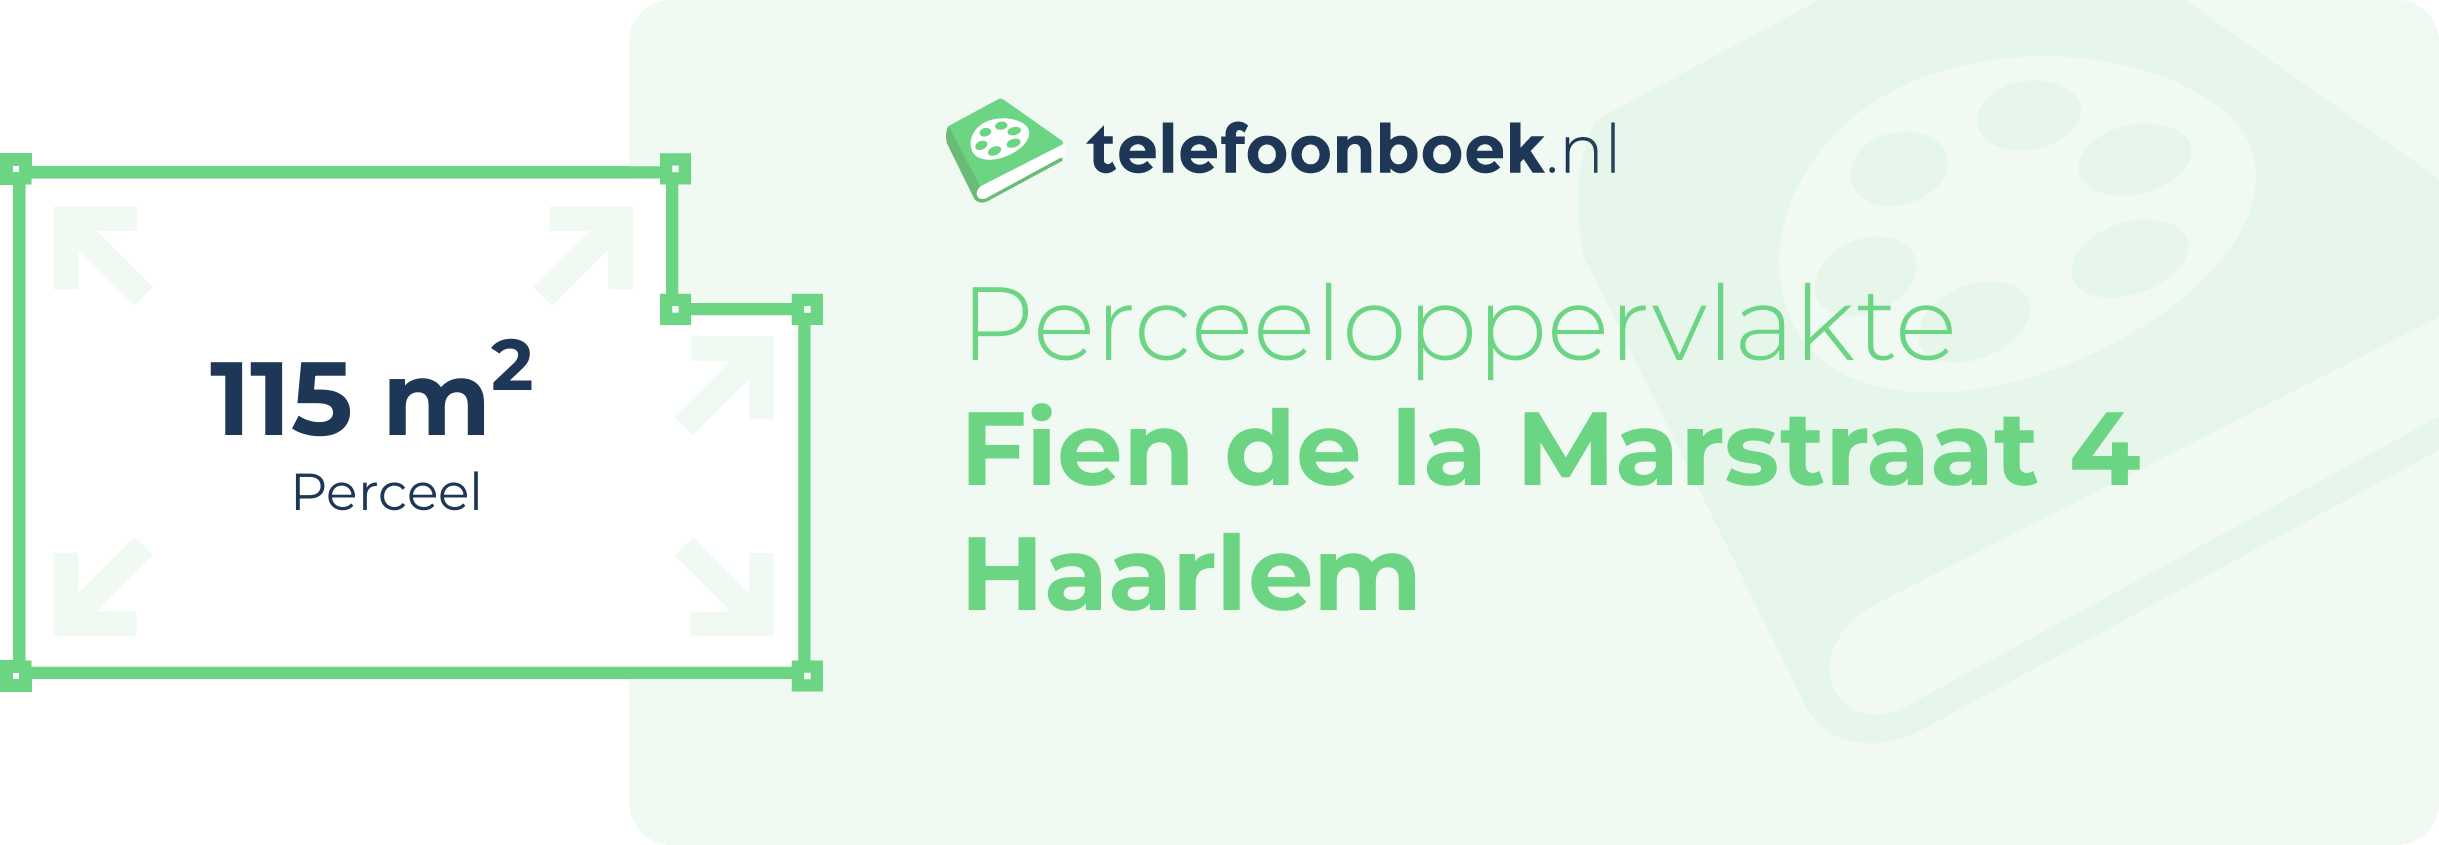 Perceeloppervlakte Fien De La Marstraat 4 Haarlem